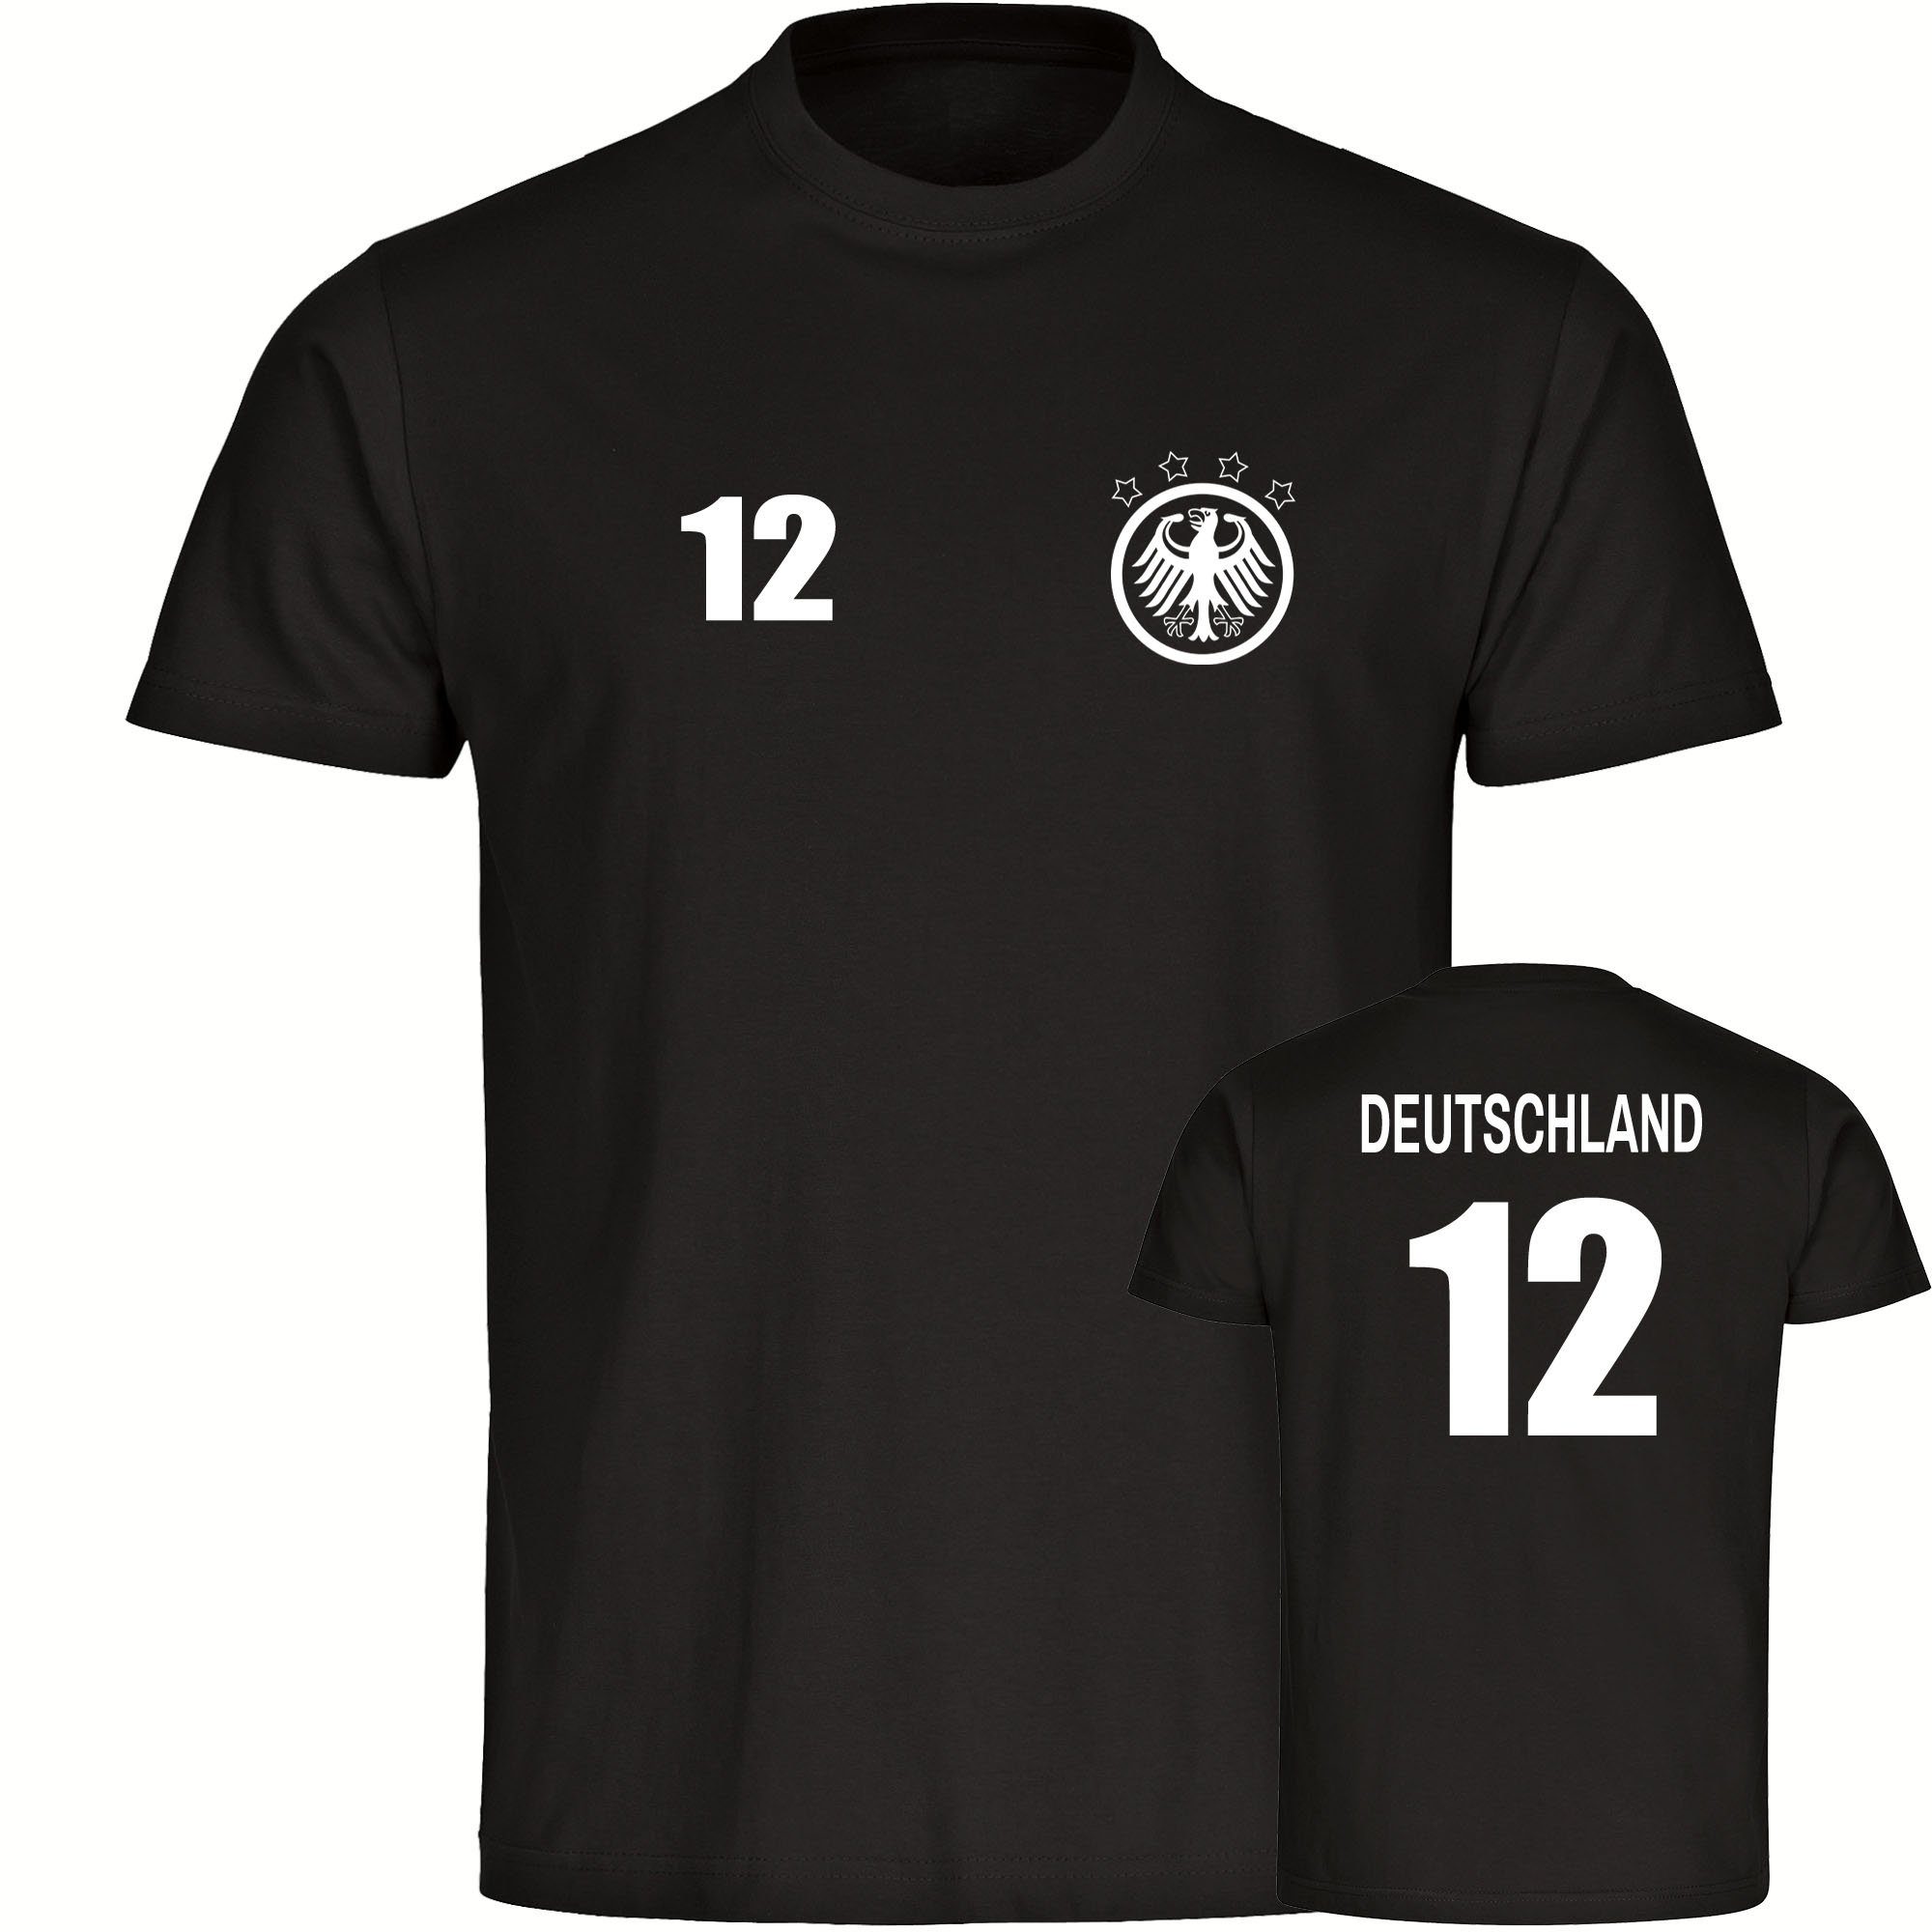 multifanshop T-Shirt Herren Deutschland - Adler Retro Trikot 12 - Männer